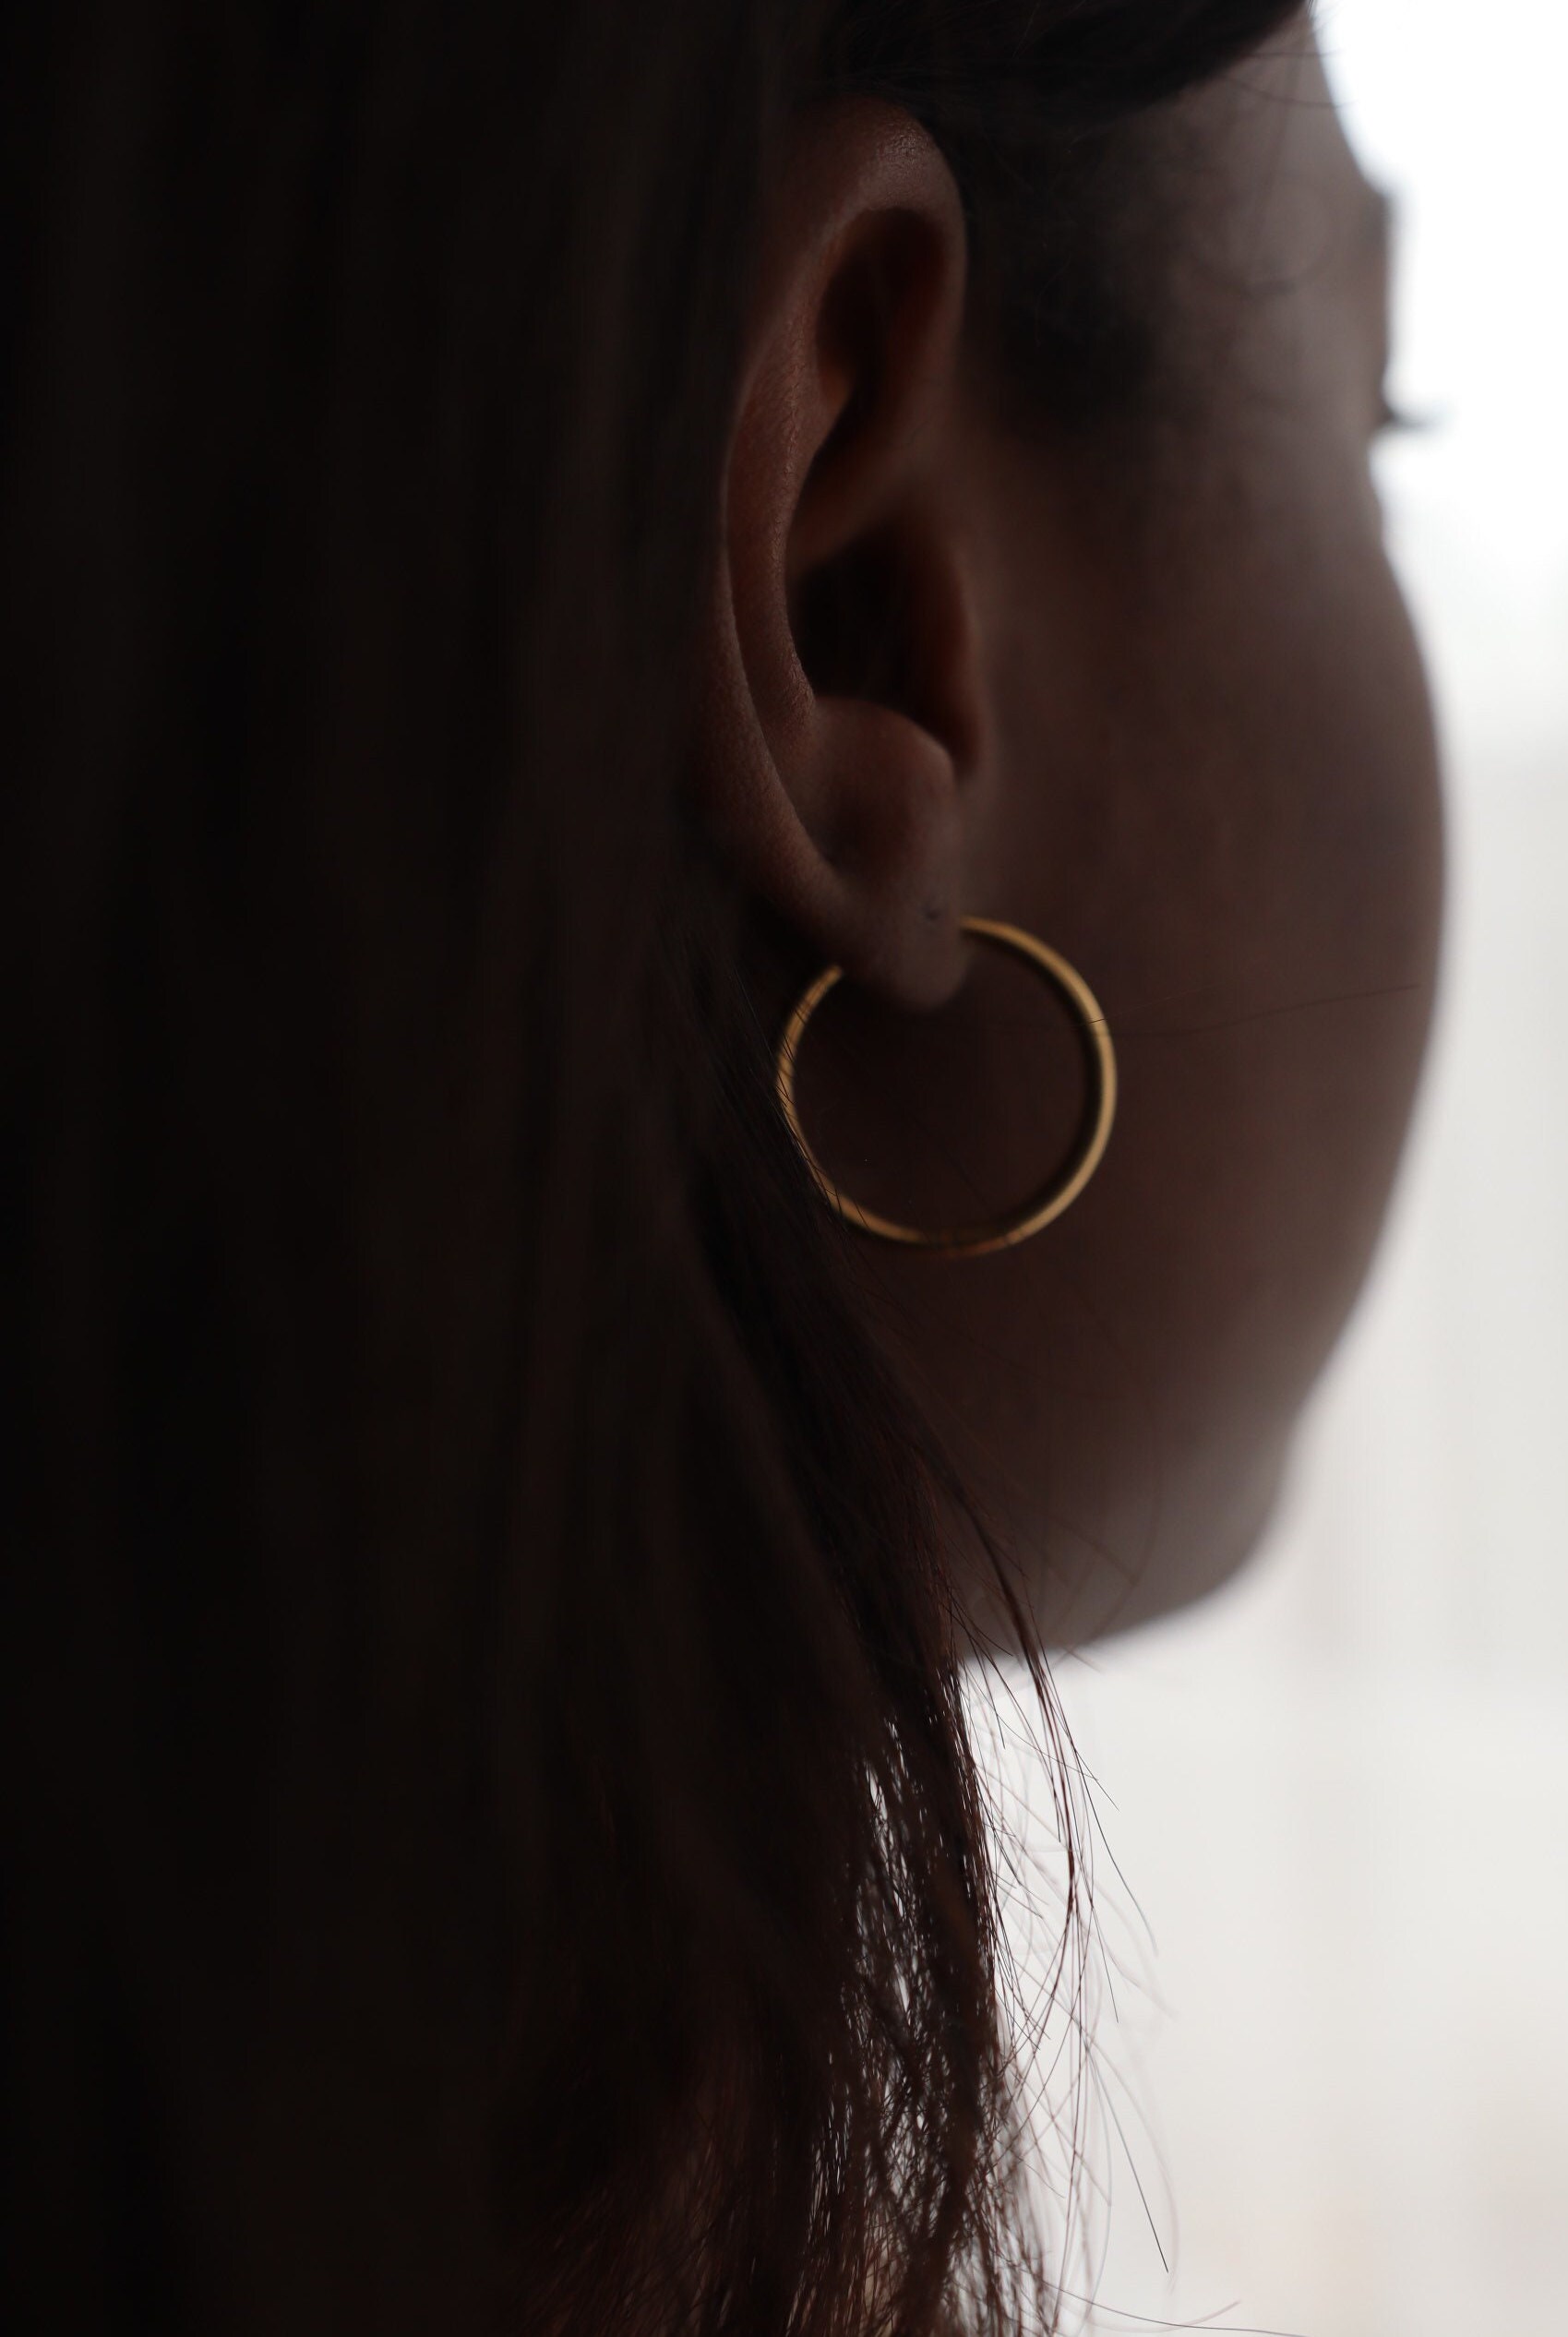 blank earrings Silver basic Earrings minimal jewelry Gold Mini Hoops thick Stainless Steel Earrings trendy dainty • Bold Earrings